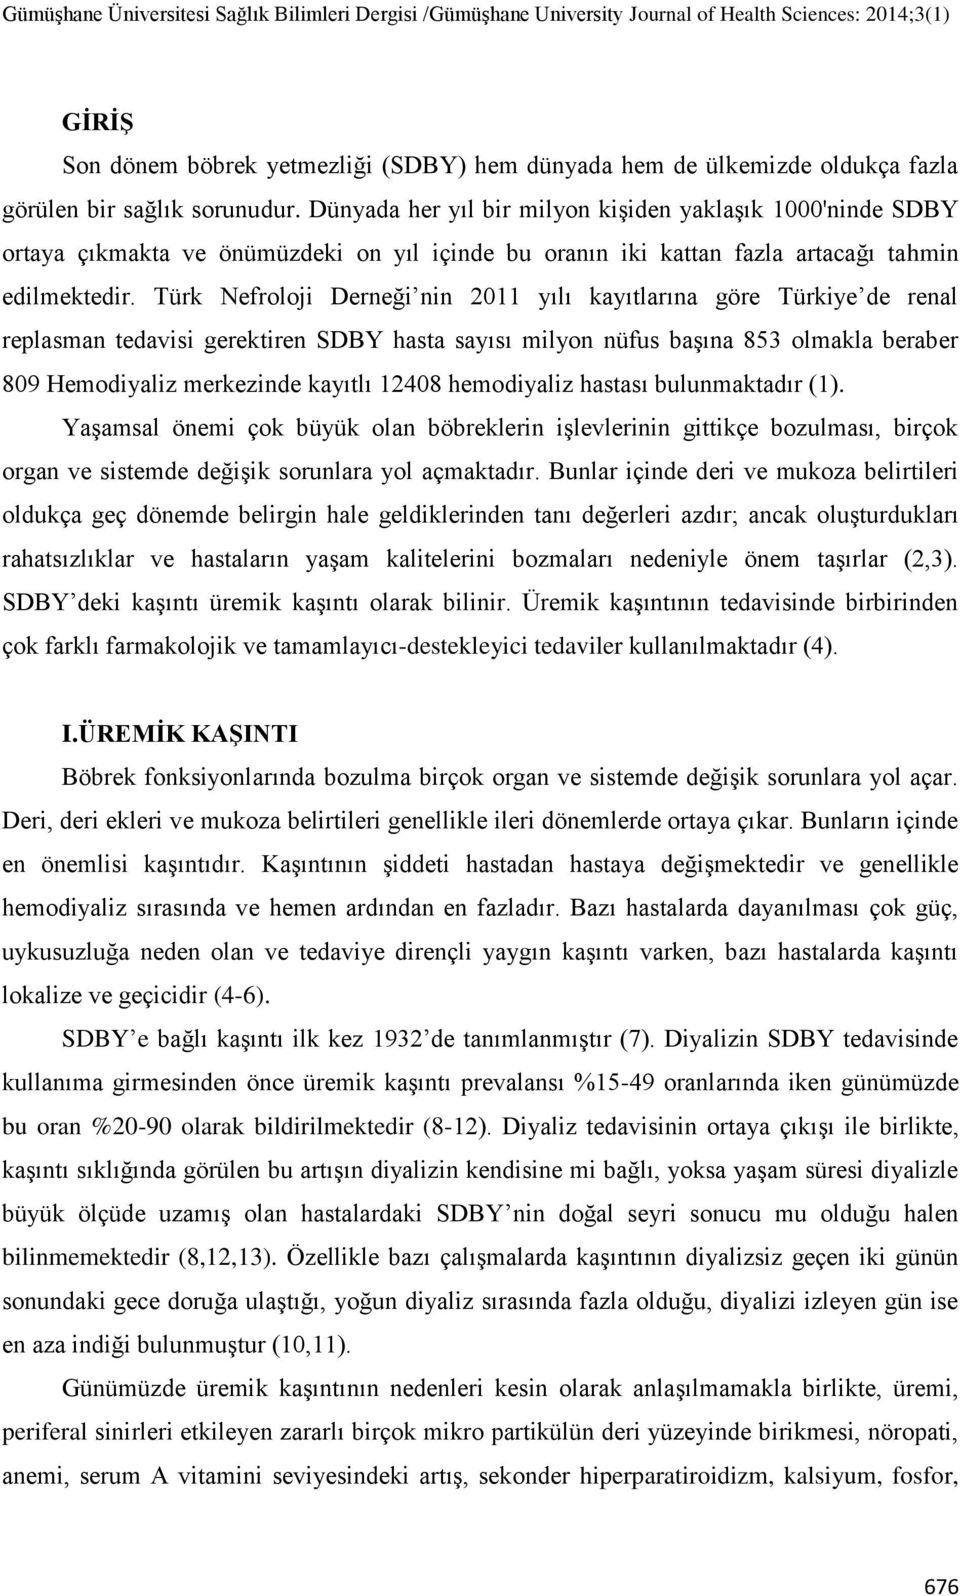 Türk Nefroloji Derneği nin 2011 yılı kayıtlarına göre Türkiye de renal replasman tedavisi gerektiren SDBY hasta sayısı milyon nüfus başına 853 olmakla beraber 809 Hemodiyaliz merkezinde kayıtlı 12408